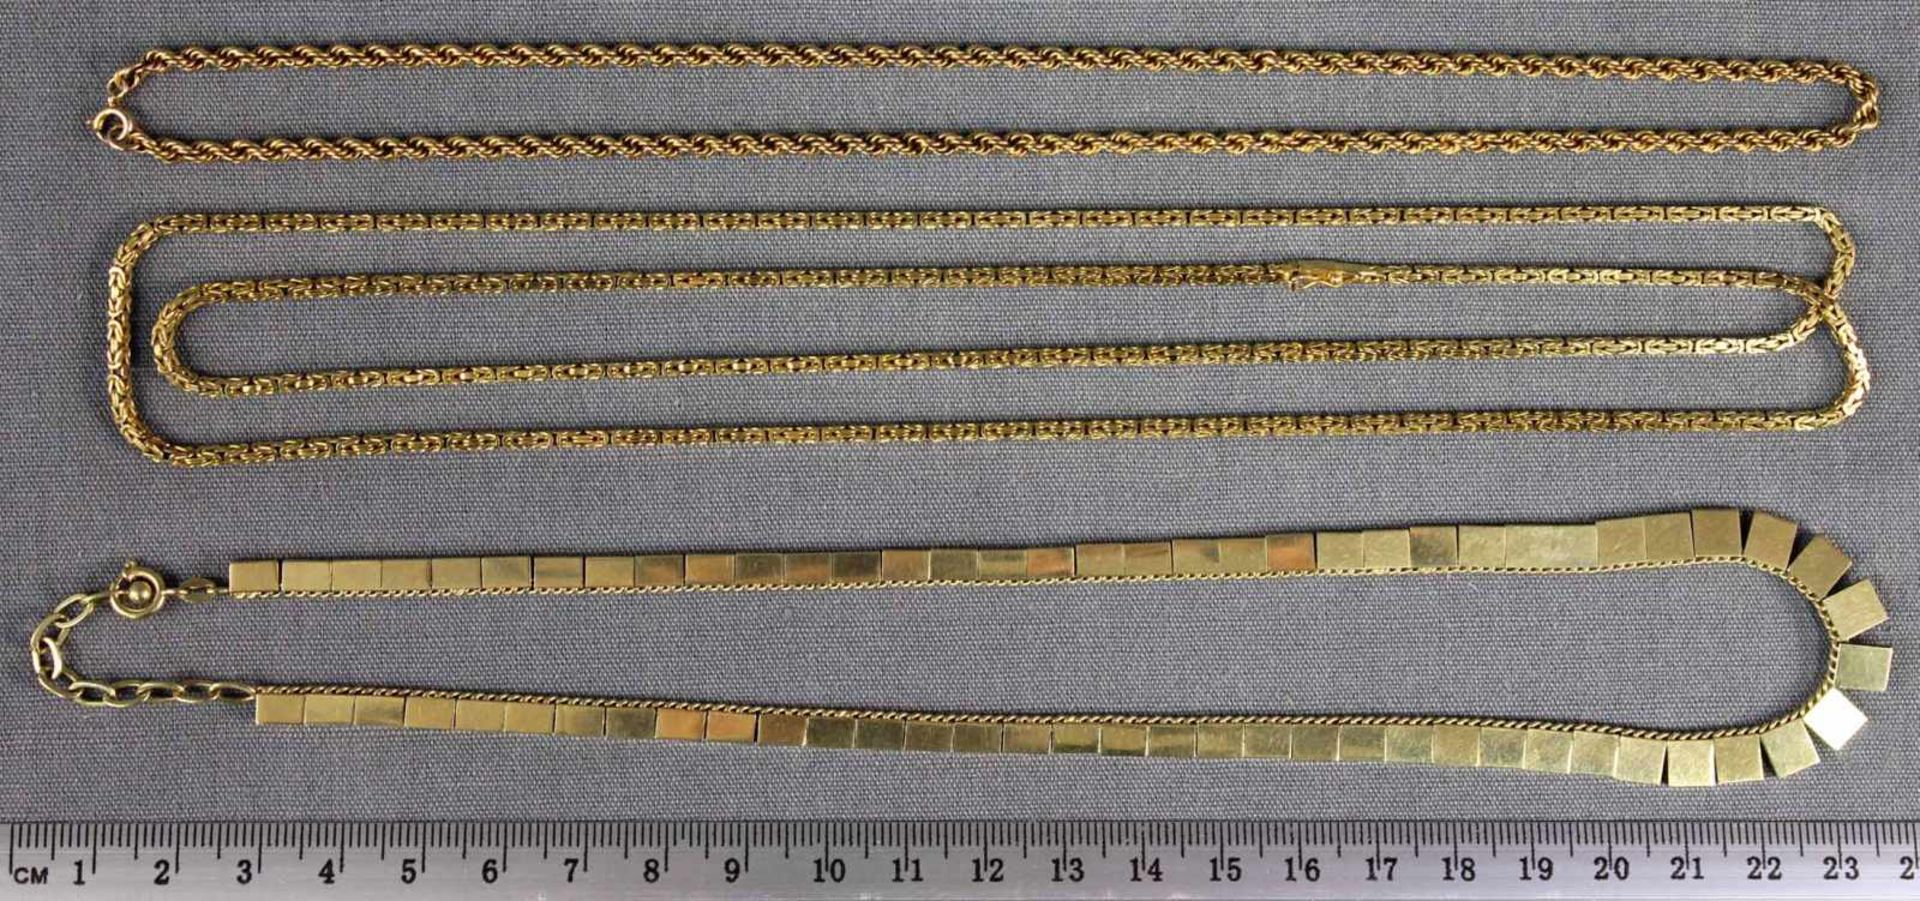 3 Ketten Gold 585. Zusammen 63,6 Gramm.3 chains of gold 585. Together 63.6 grams. - Bild 7 aus 8